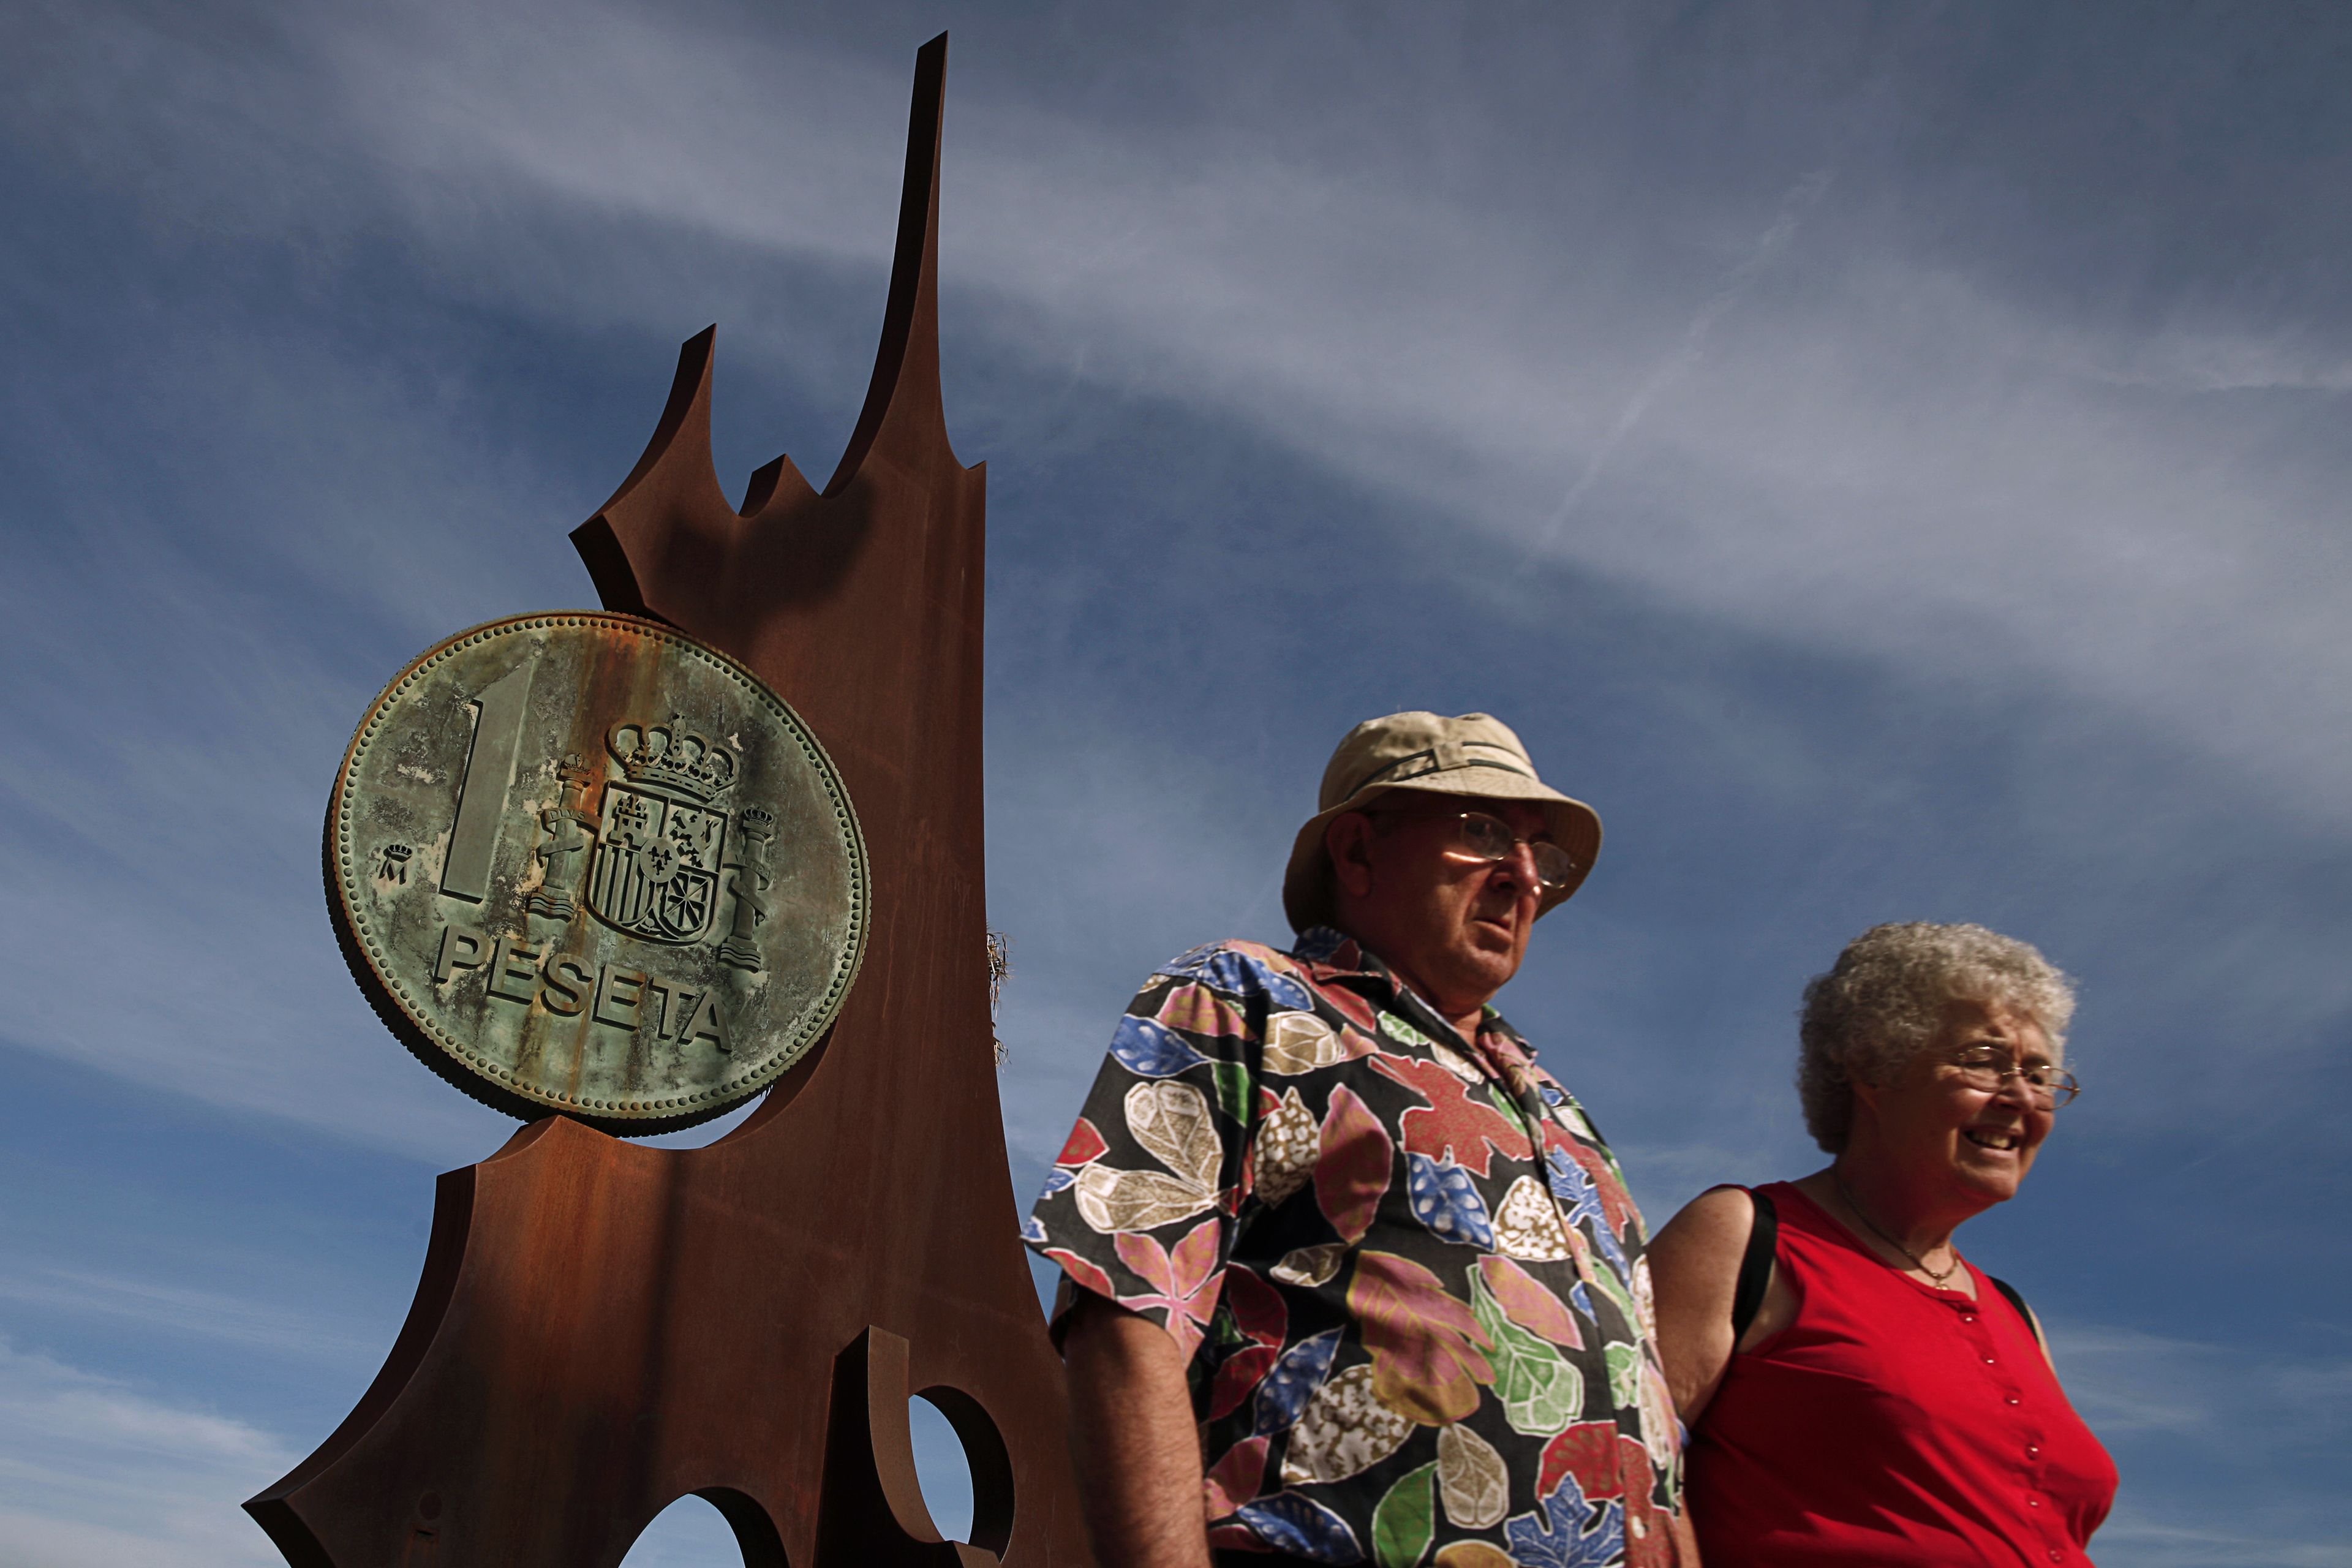 Una pareja delante de un monumento a la peseta